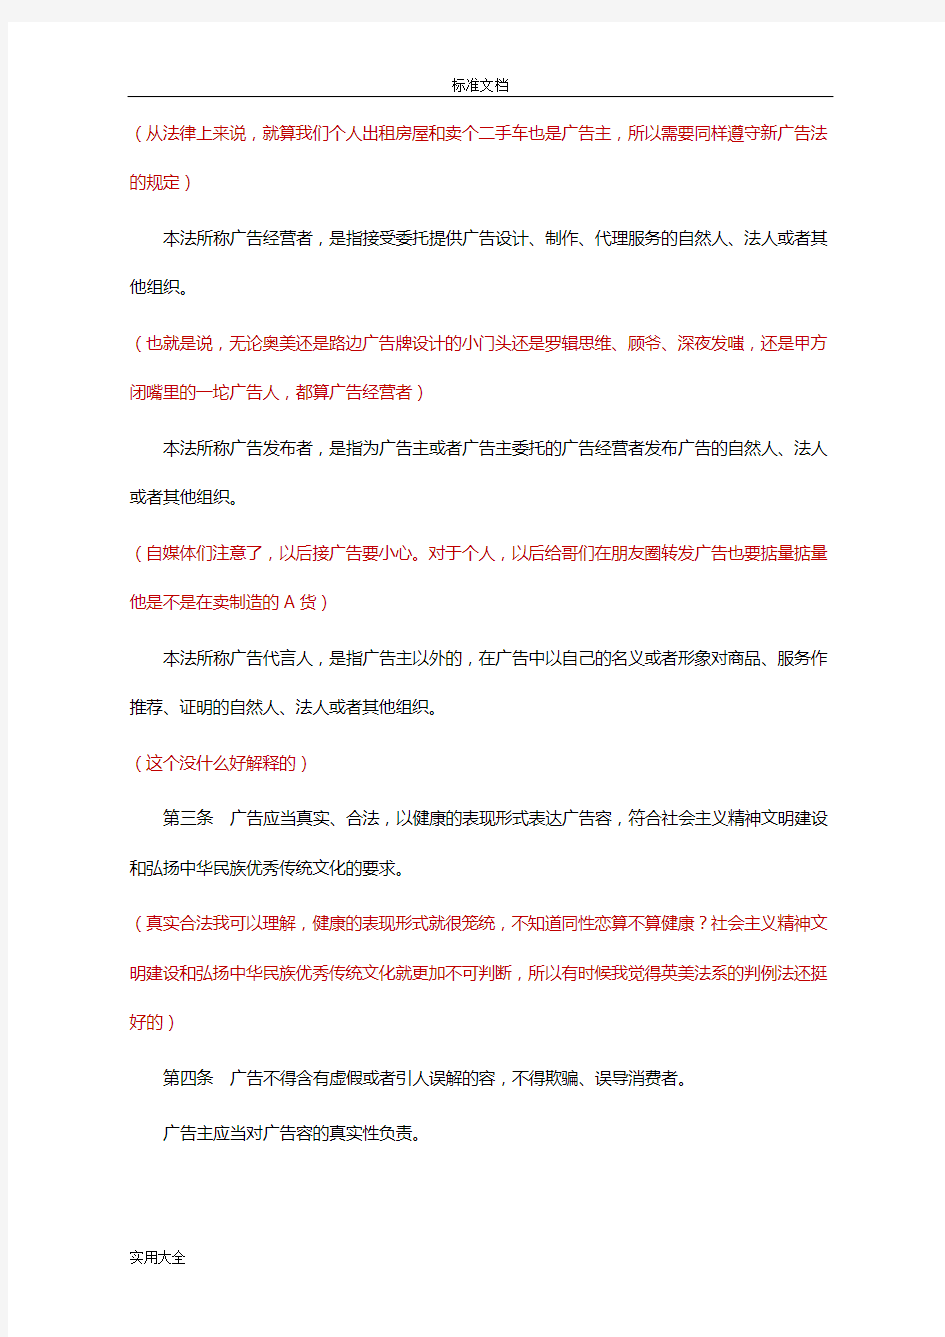 【法规】2015.09中华人民共和国广告法及解读汇报